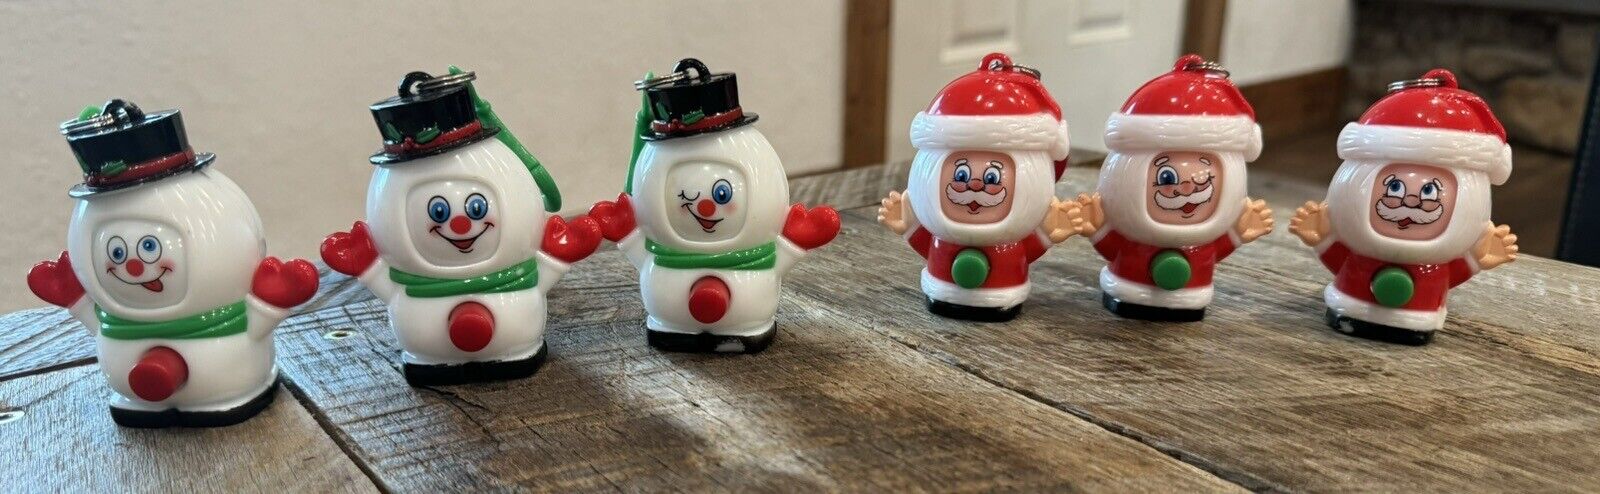 Hilco Snowman & Santa Christmas Spinning Funny Faces Fob Keychain Novelty Toys 6